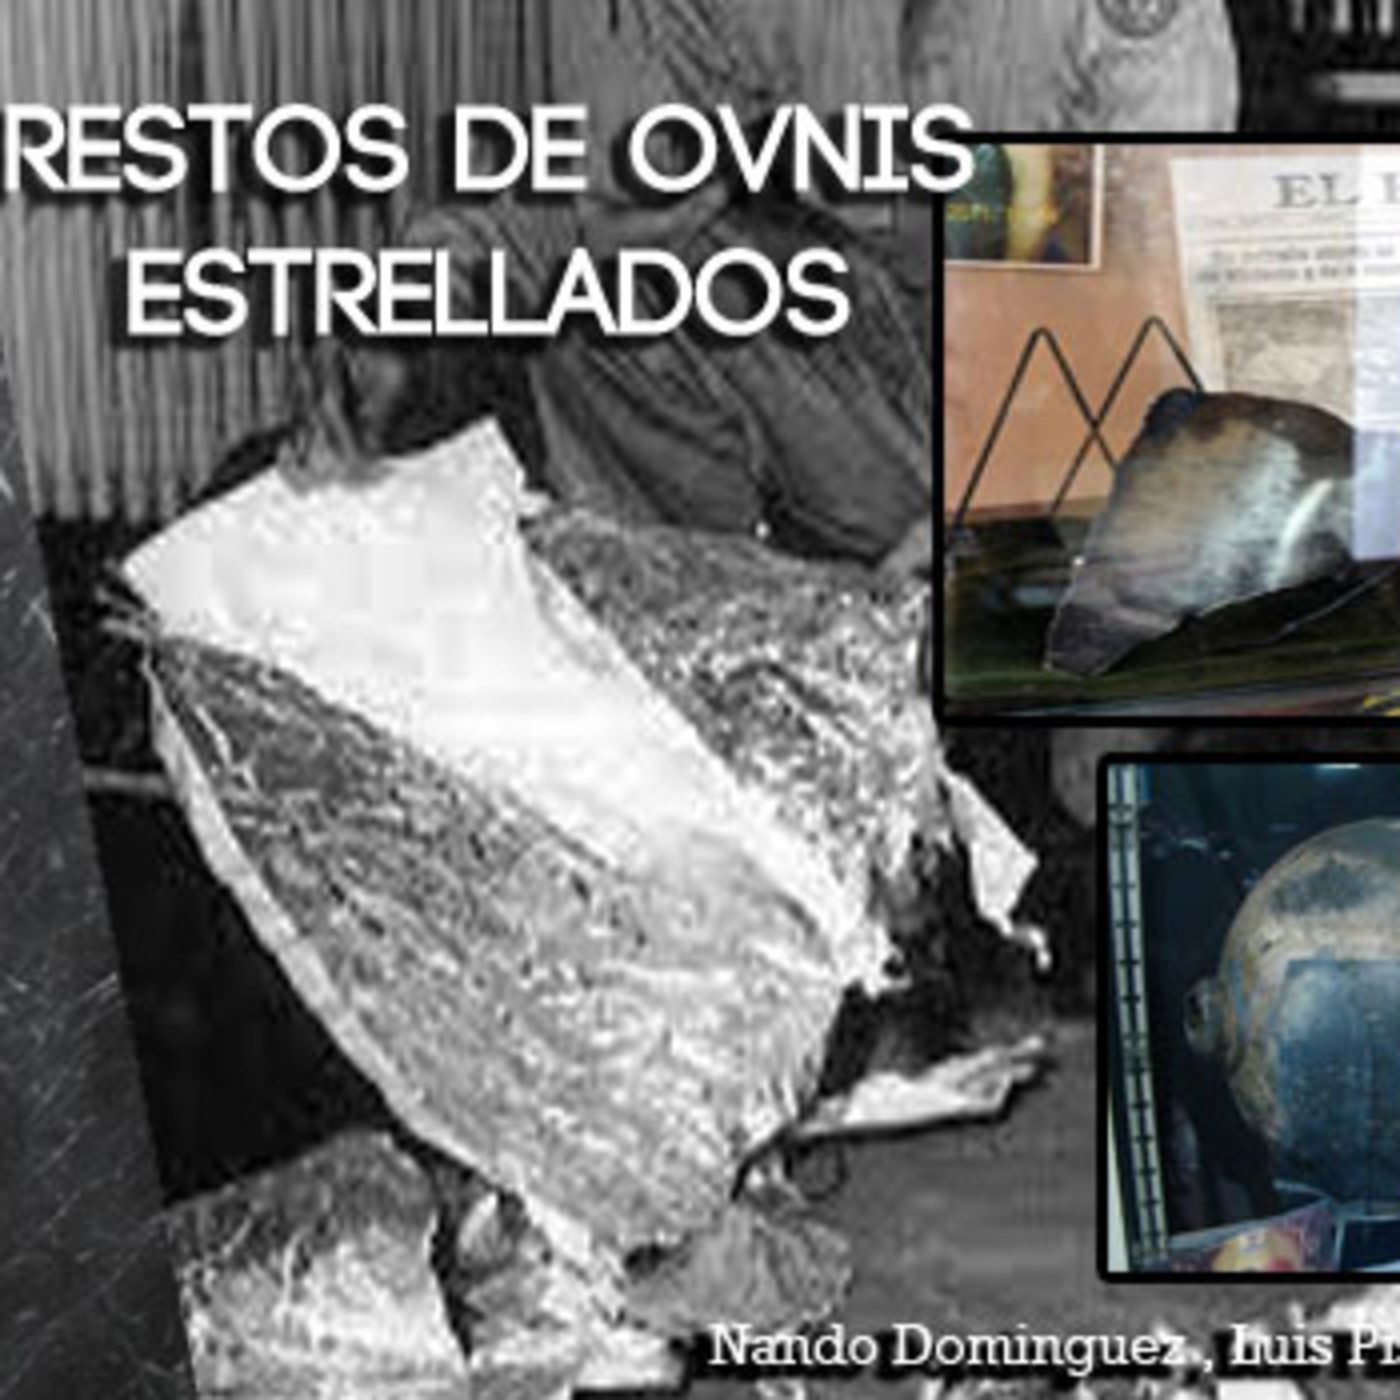 La Puerta al Misterio - Restos de ovnis Recuperados son analizados estudiados y expuestos en Museos ovni